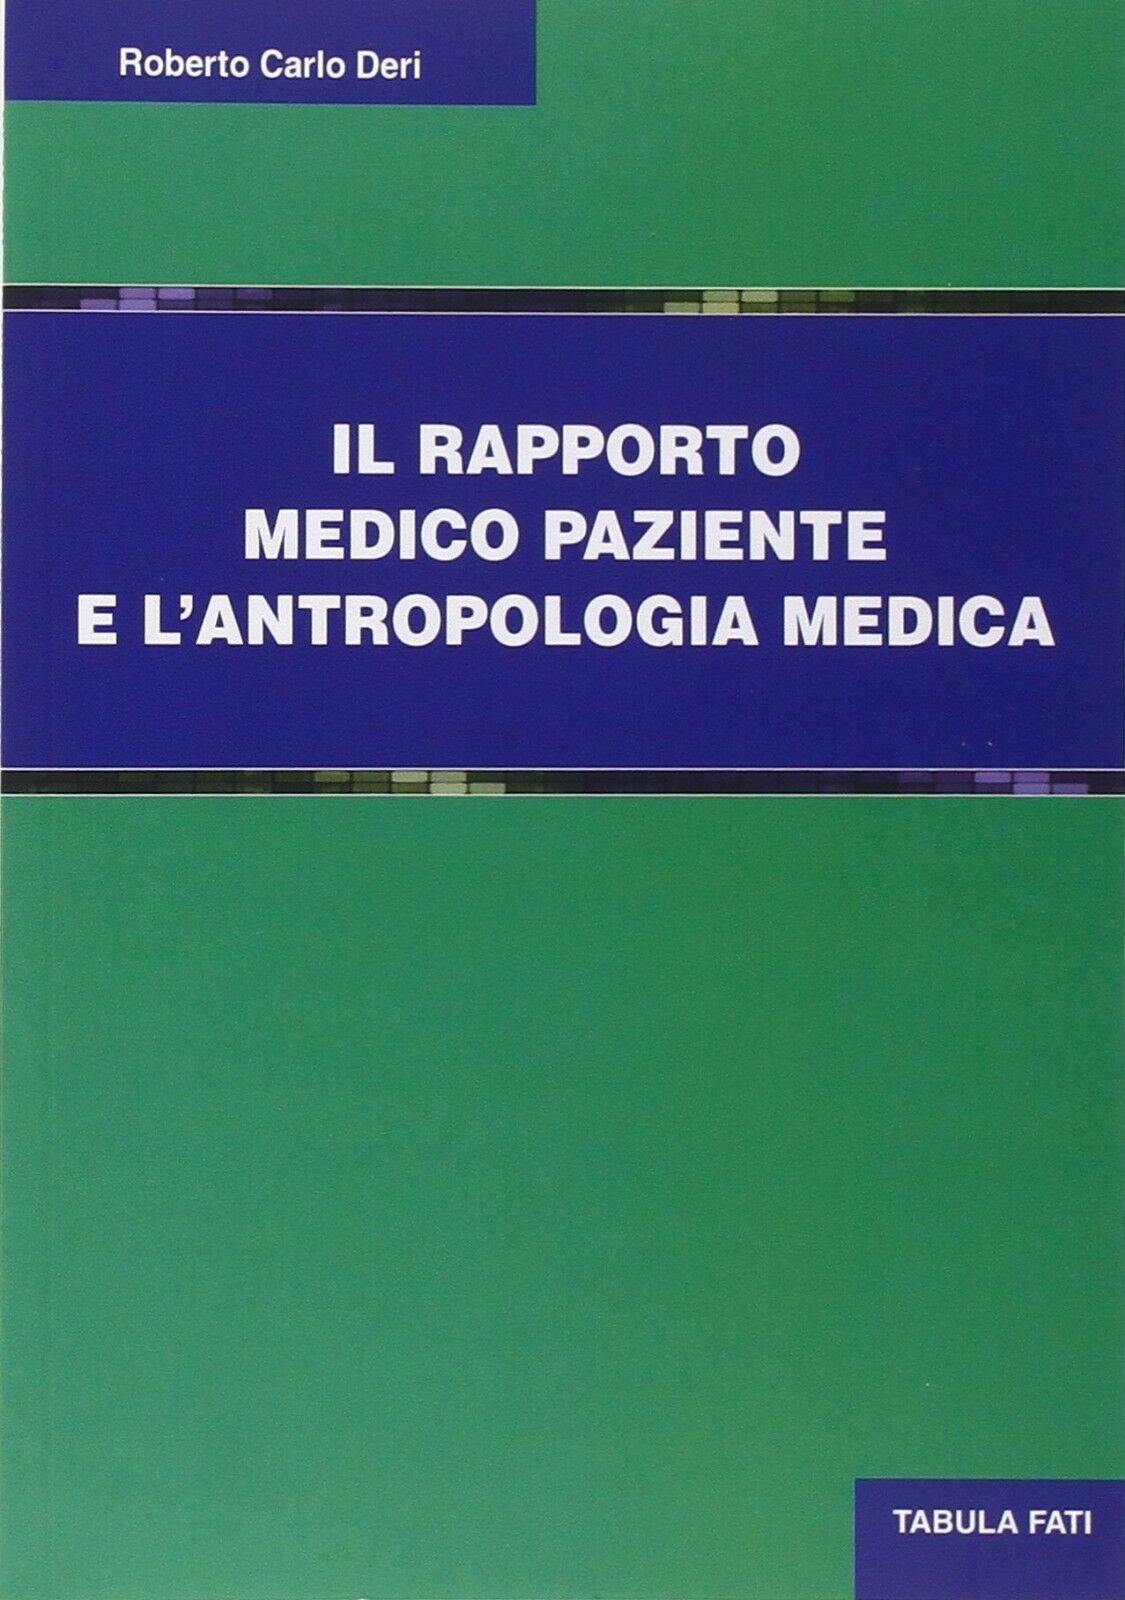 Il rapporto medico paziente e L'antropologia culturale di Roberto C. Deri, 201